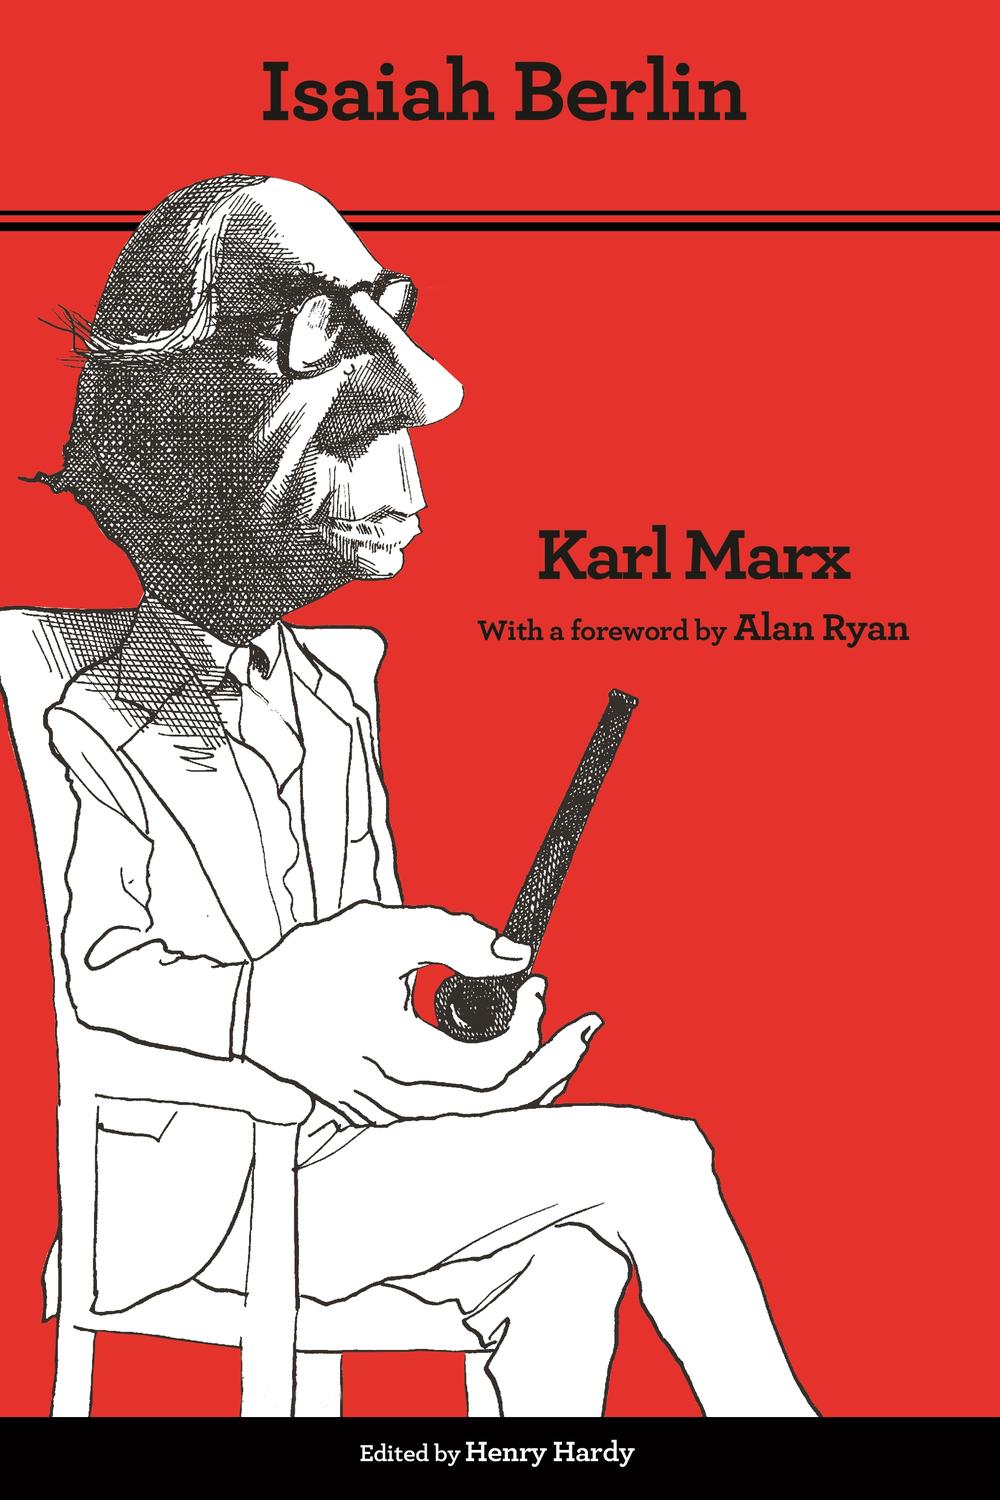 Karl Marx - Isaiah Berlin